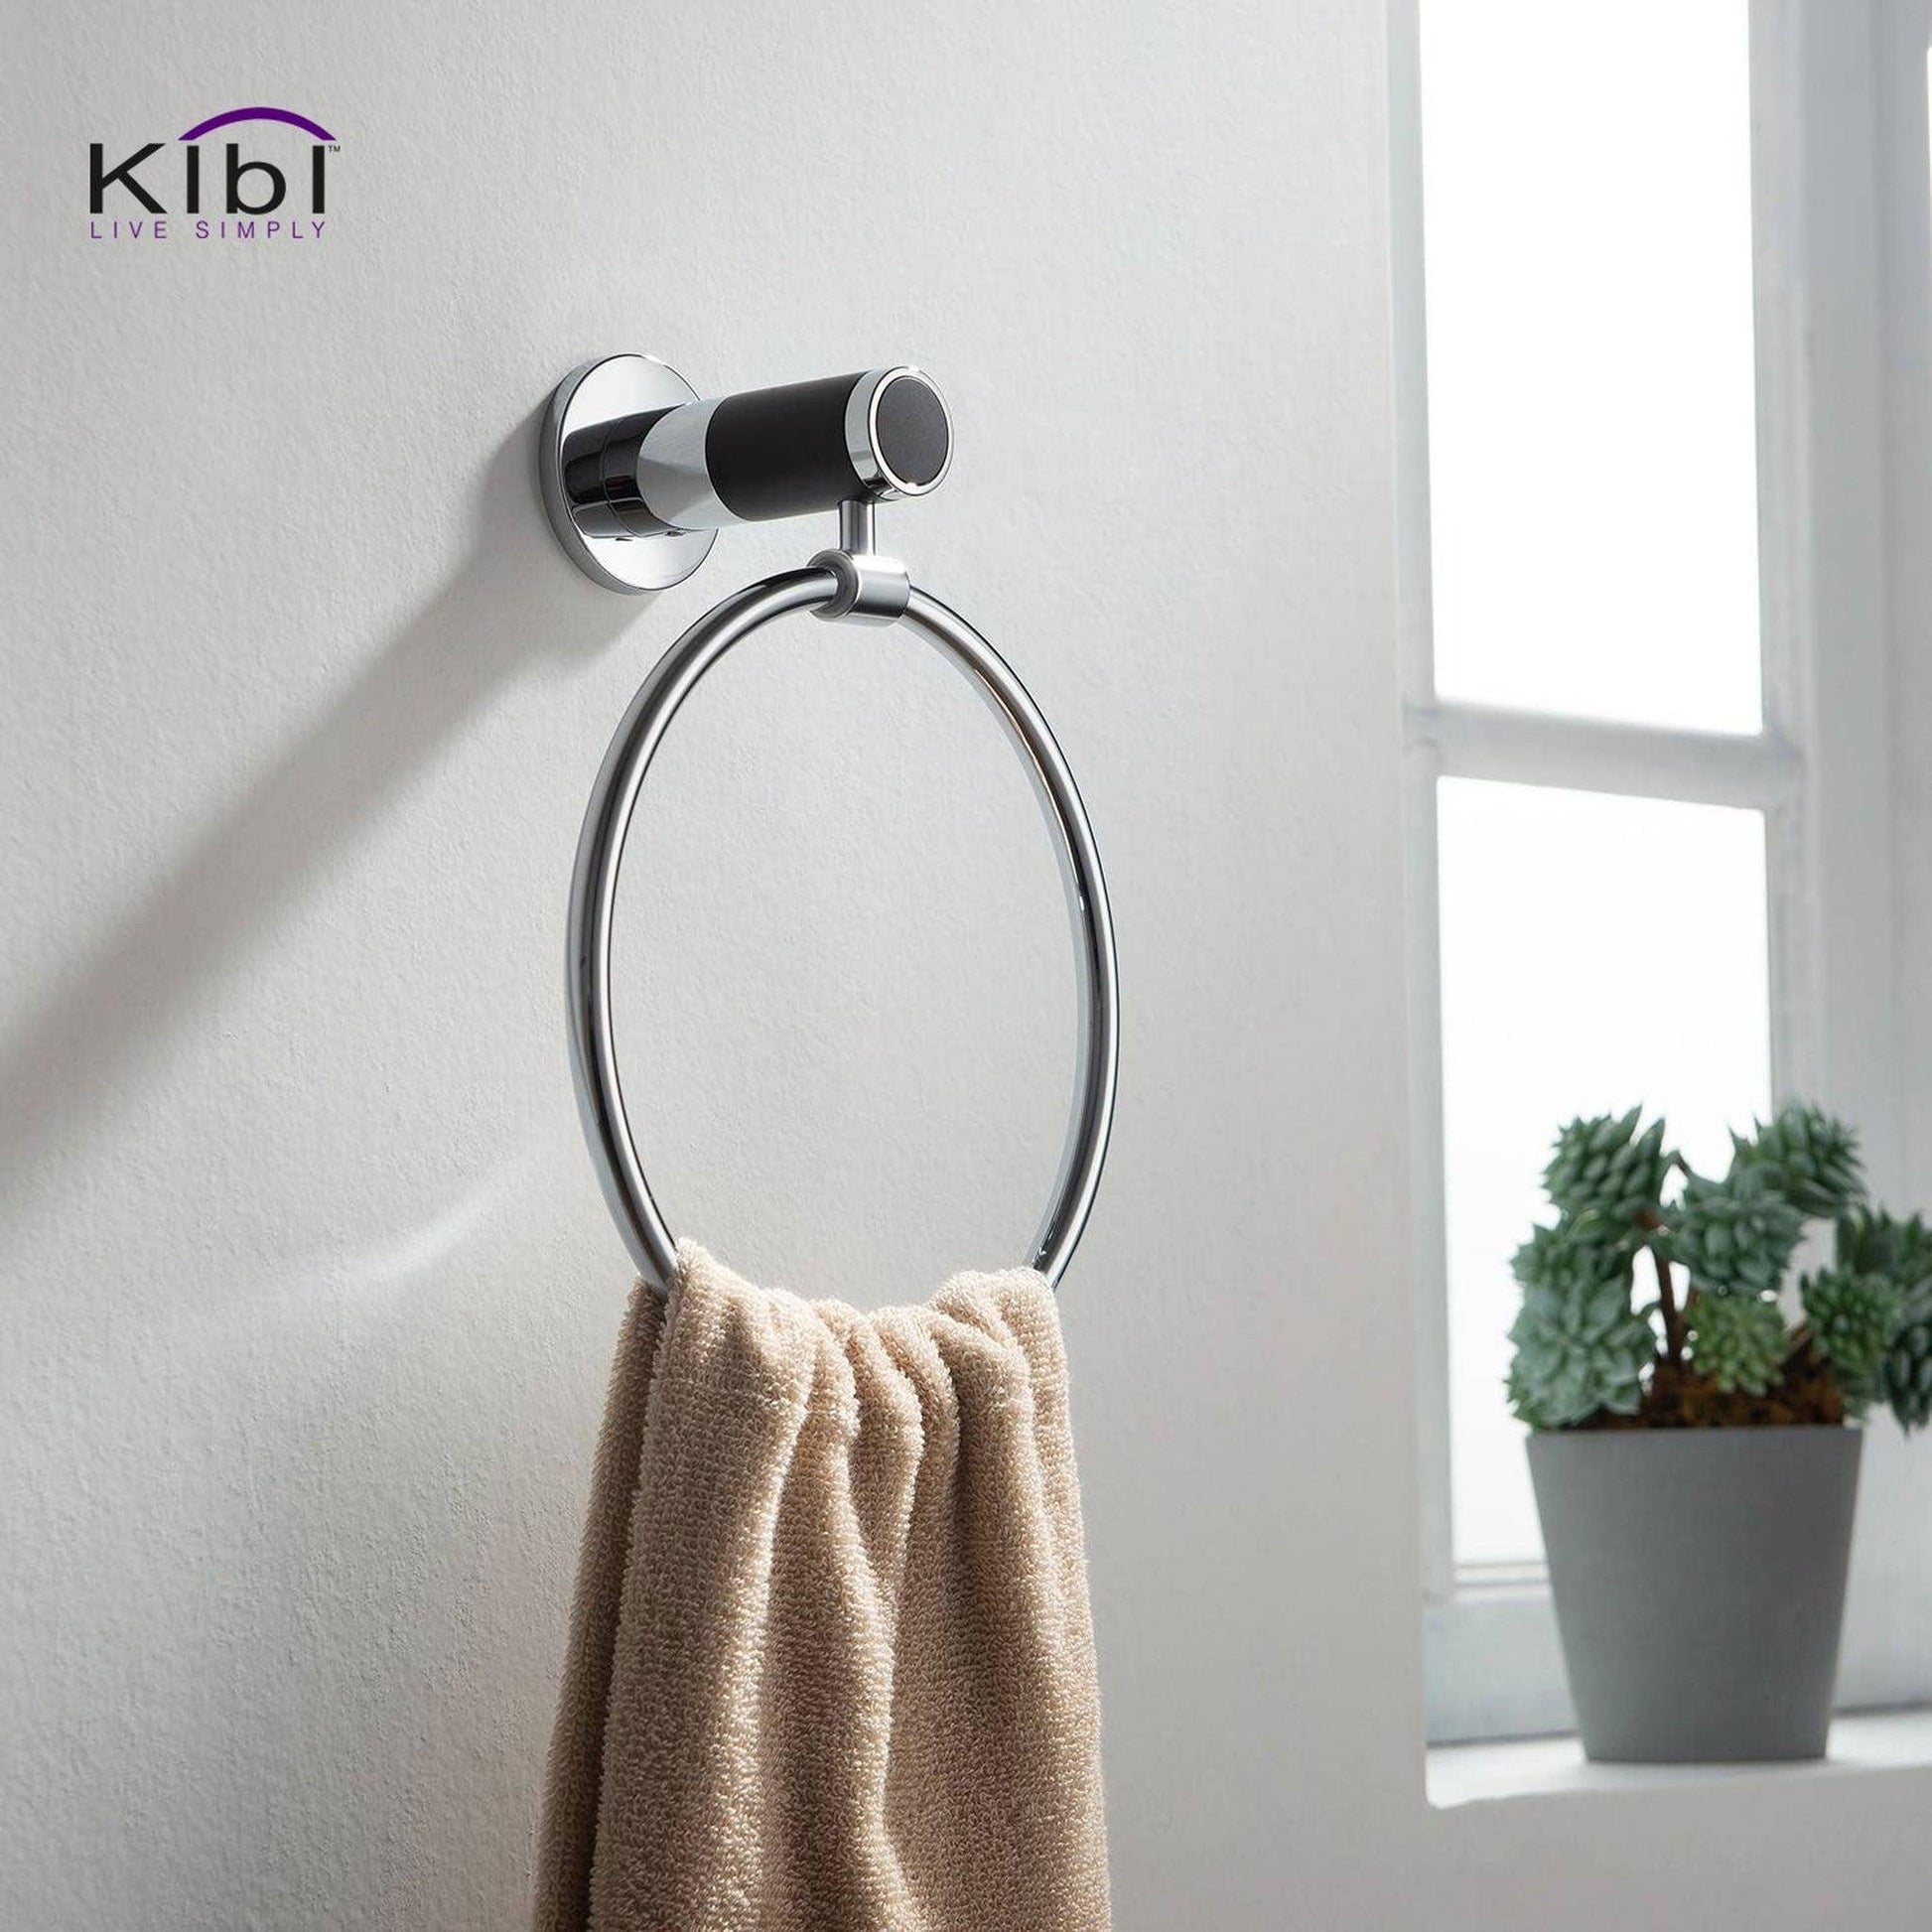 KIBI Abaco Bathroom Towel Ring in Chrome Black Finish